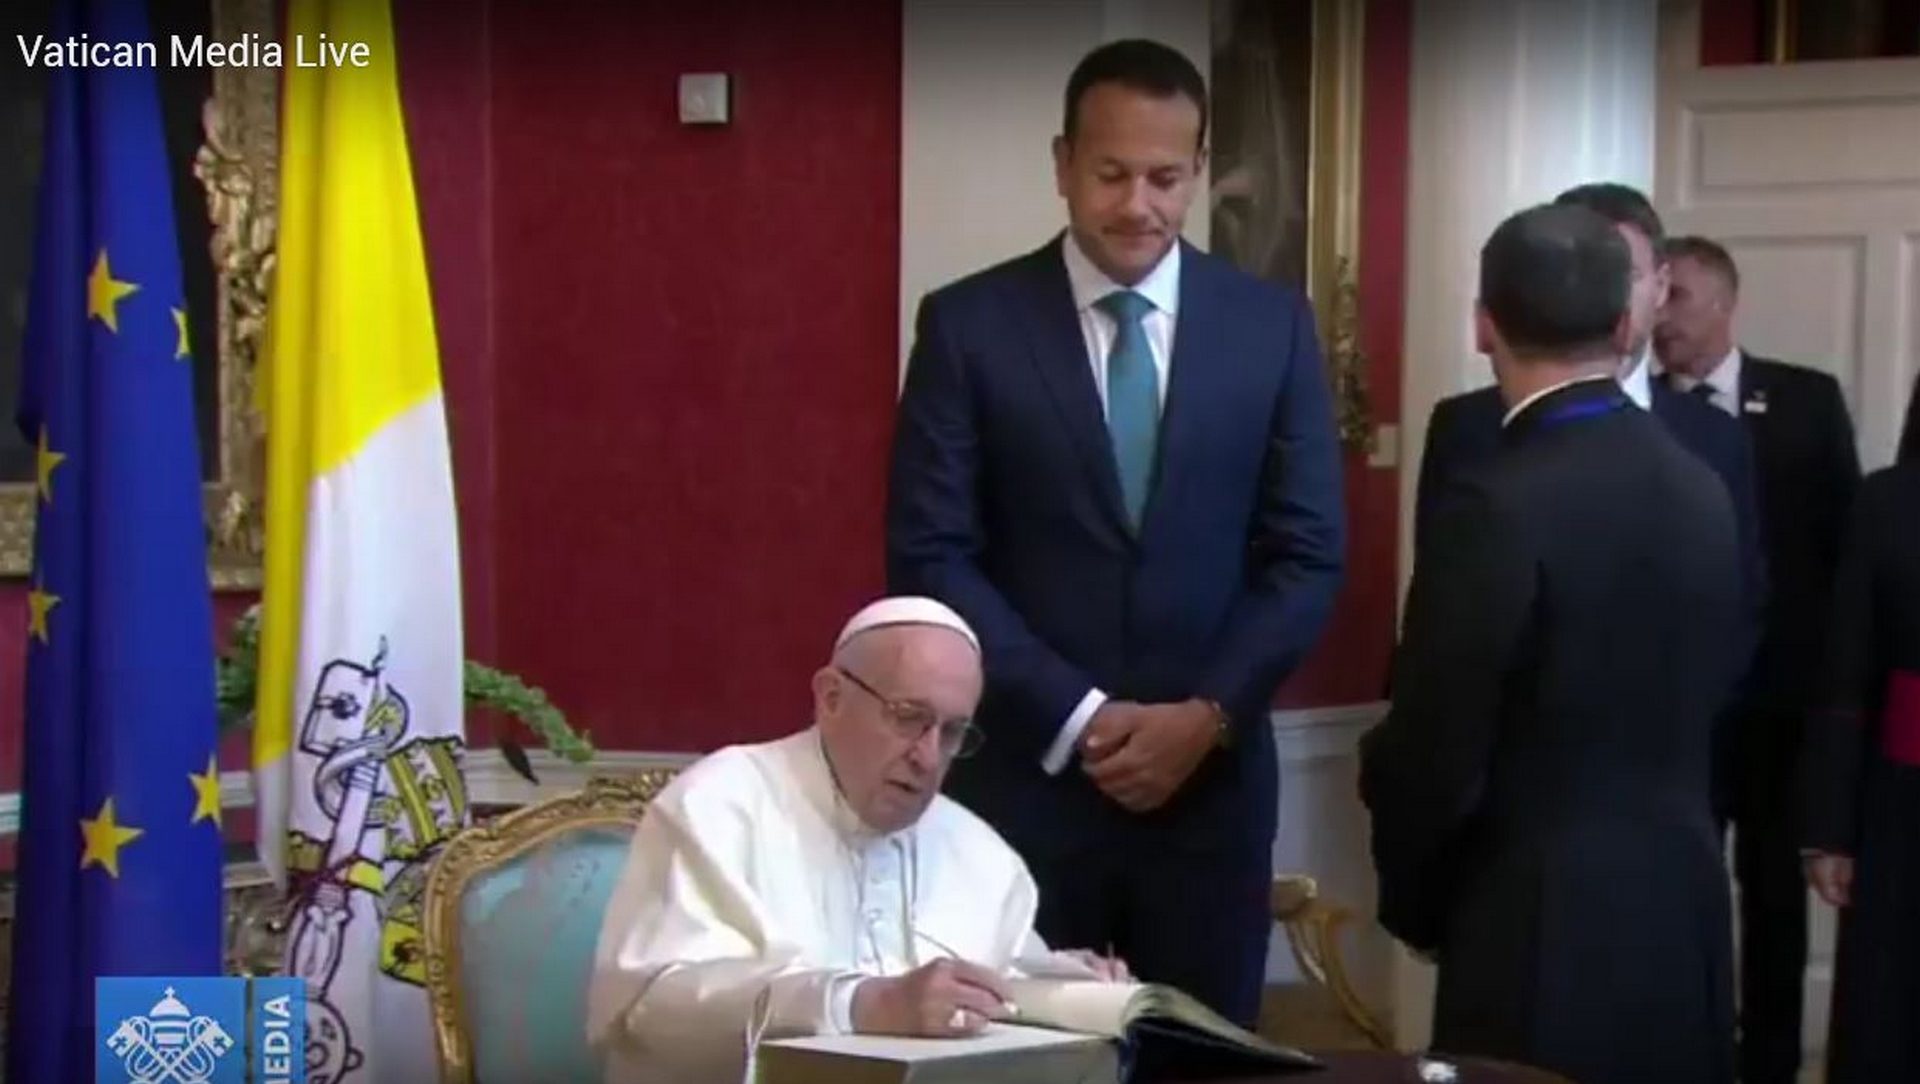 Le pape signe le livre d'or sous les yeux du Prmier ministre irlandais Leo Varadkar | capture d'écran Vatican media